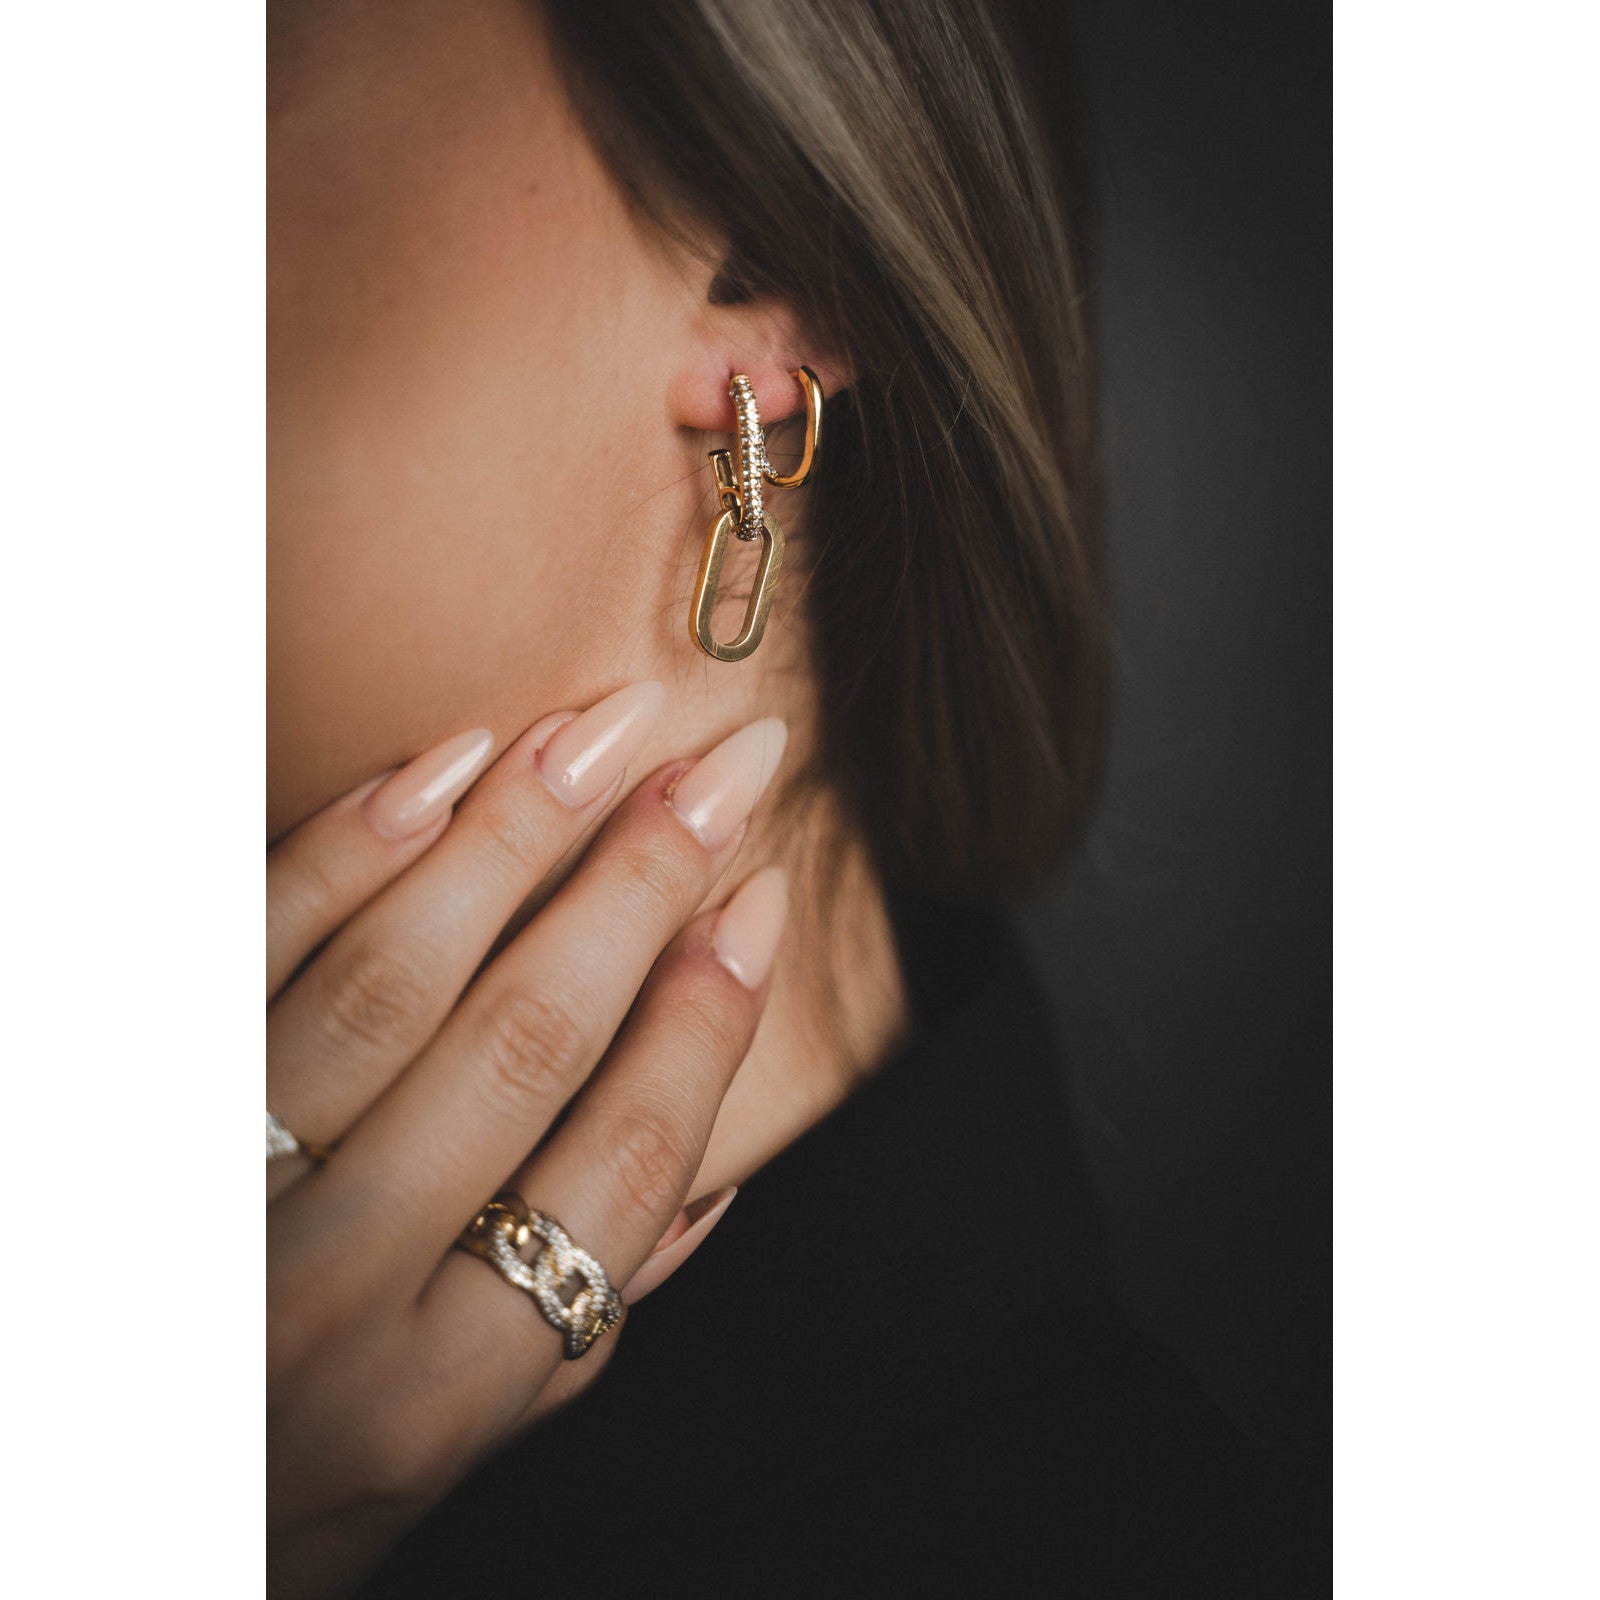 EDGY Medium Ohrringe Yasemen Store Schmuck Accessoires Edelstahl Stainless Steel 18K Vergoldet Gold jewel jewelry earring